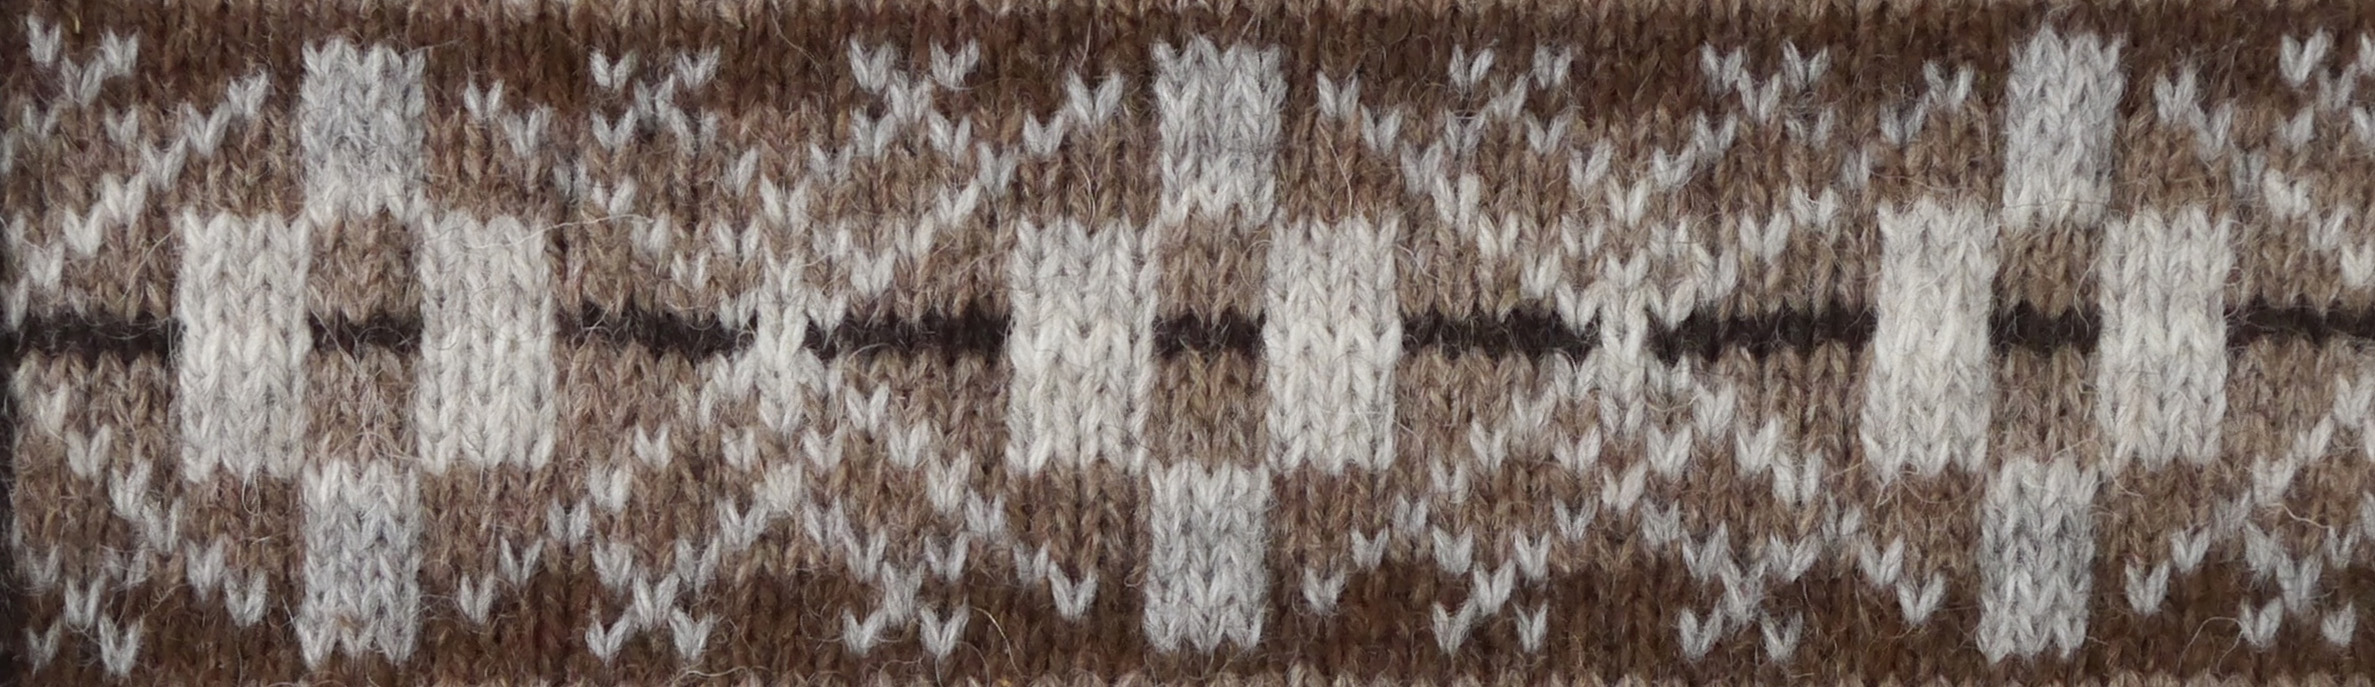 Foula Wool Knitting Pattern 3